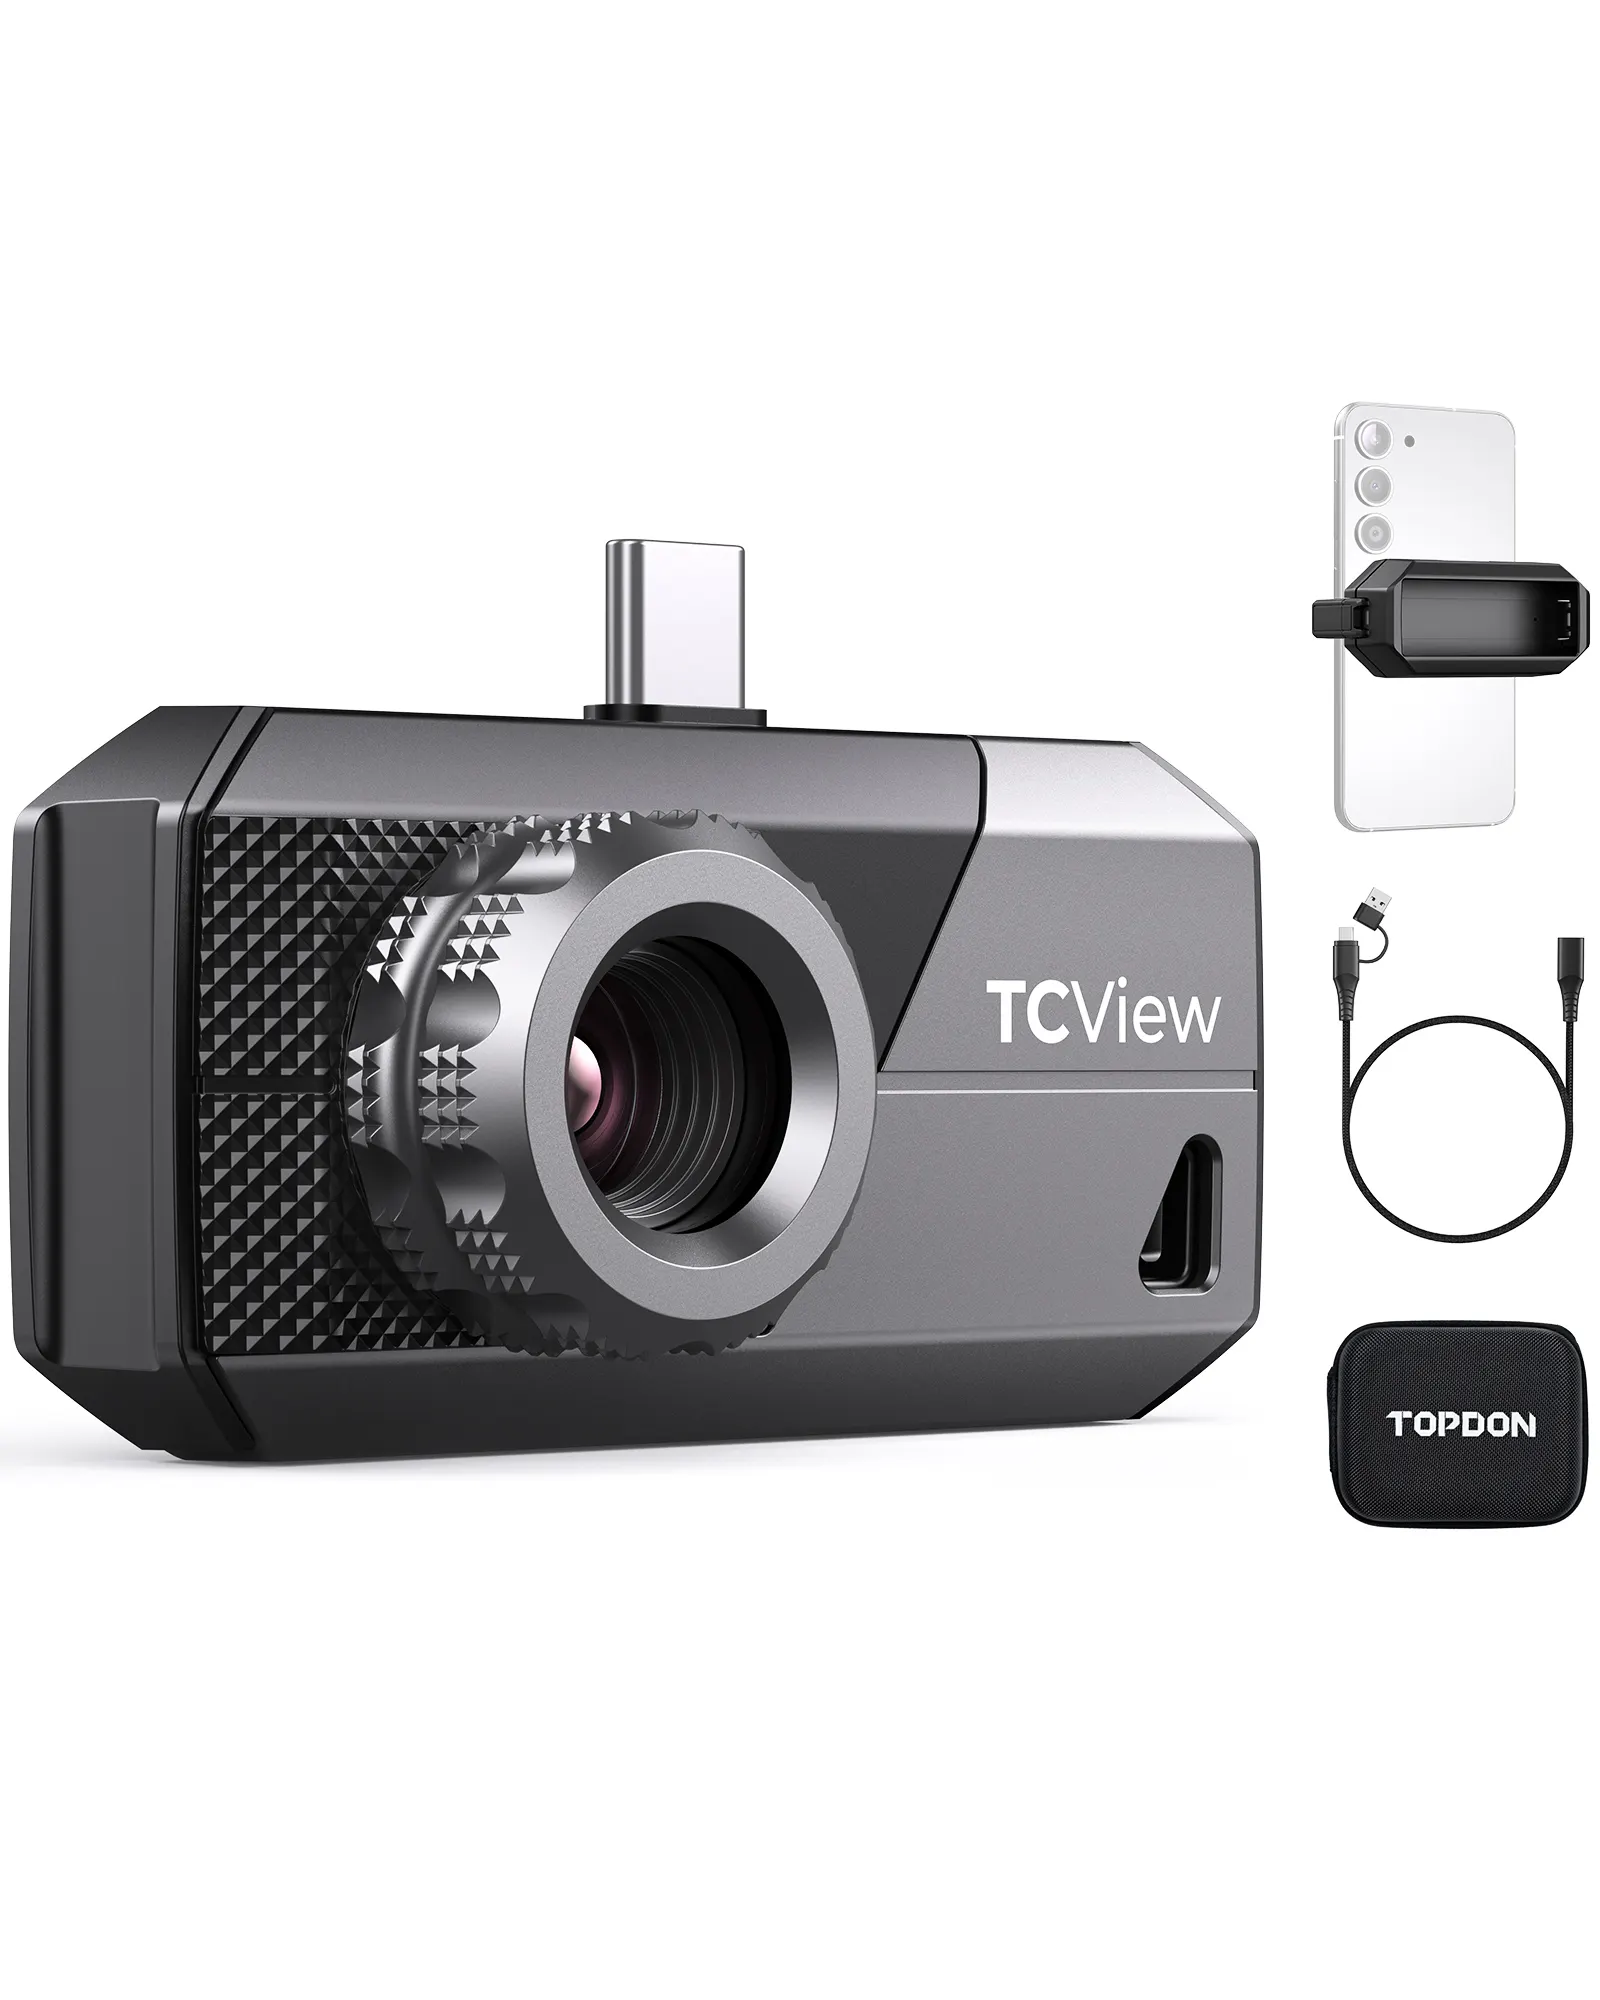 كاميرا حرارية متنقلة صغيرة TS001 من Topdon تعمل بالأشعة تحت الحمراء للرؤية الليلية وحدة تصوير بخاصية التوهج الحراري بمدخل يو إس بي وتصل إلى مدى طويل بسعر السيارة